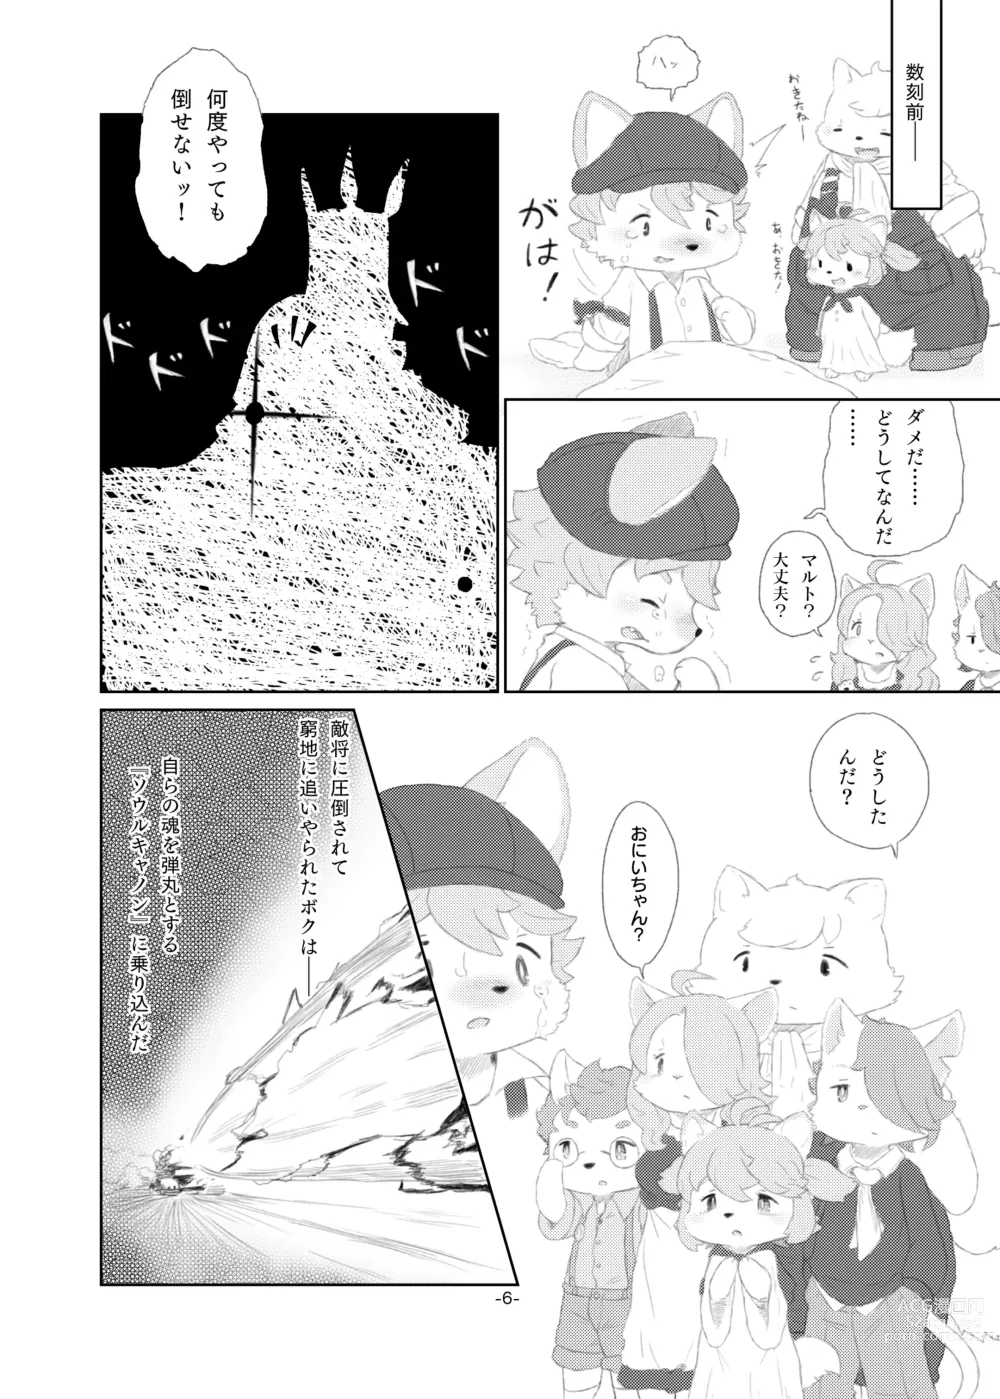 Page 5 of doujinshi Shinai Level 10+